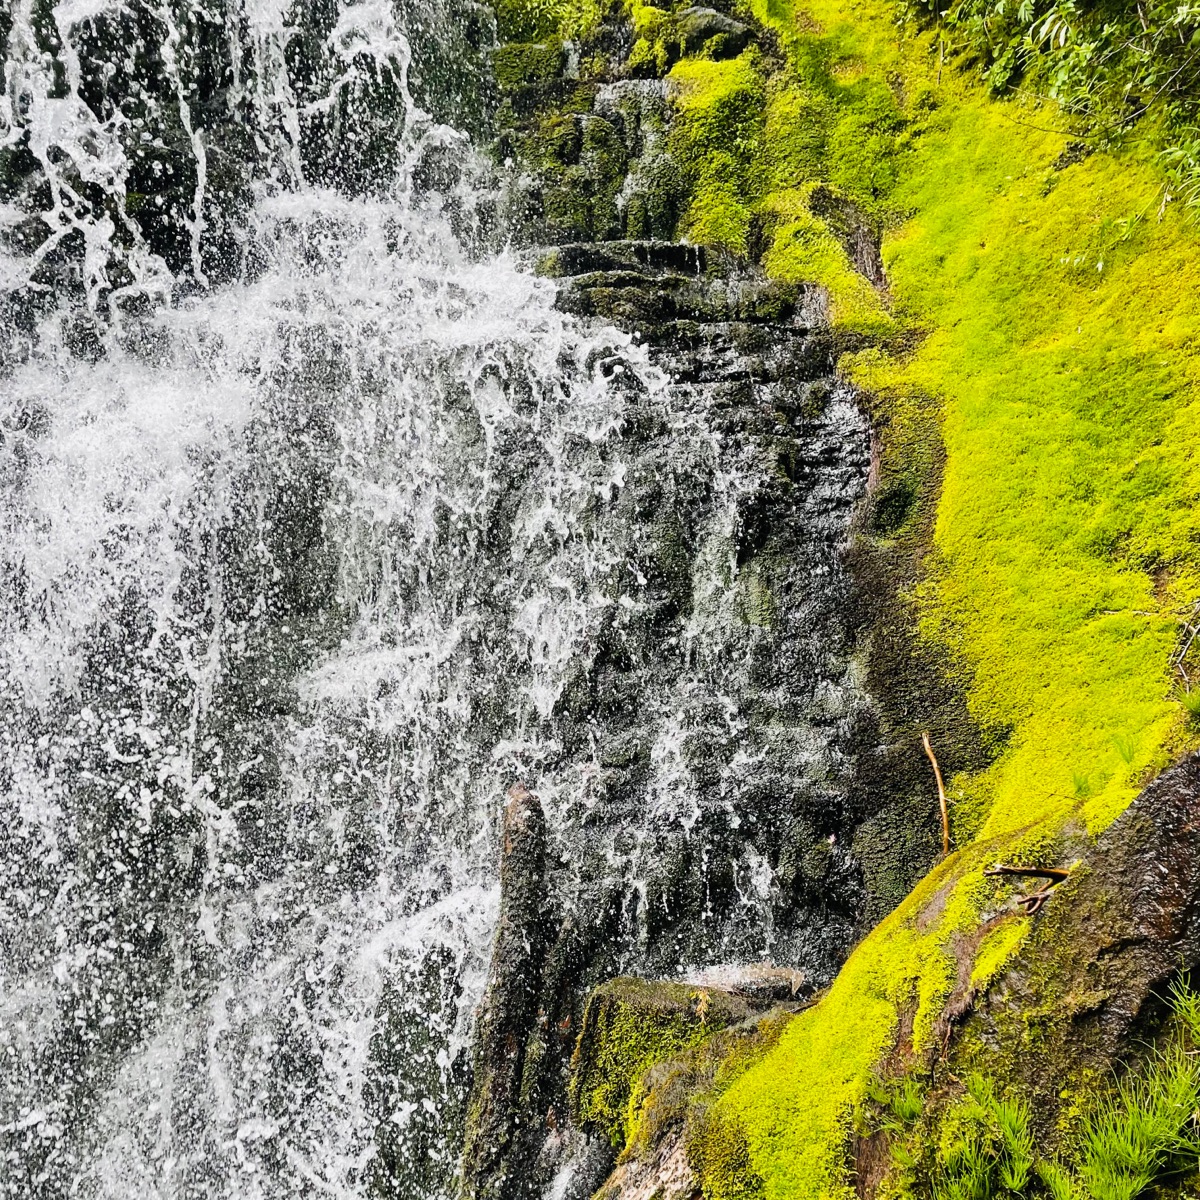 Tumalo Waterfalls